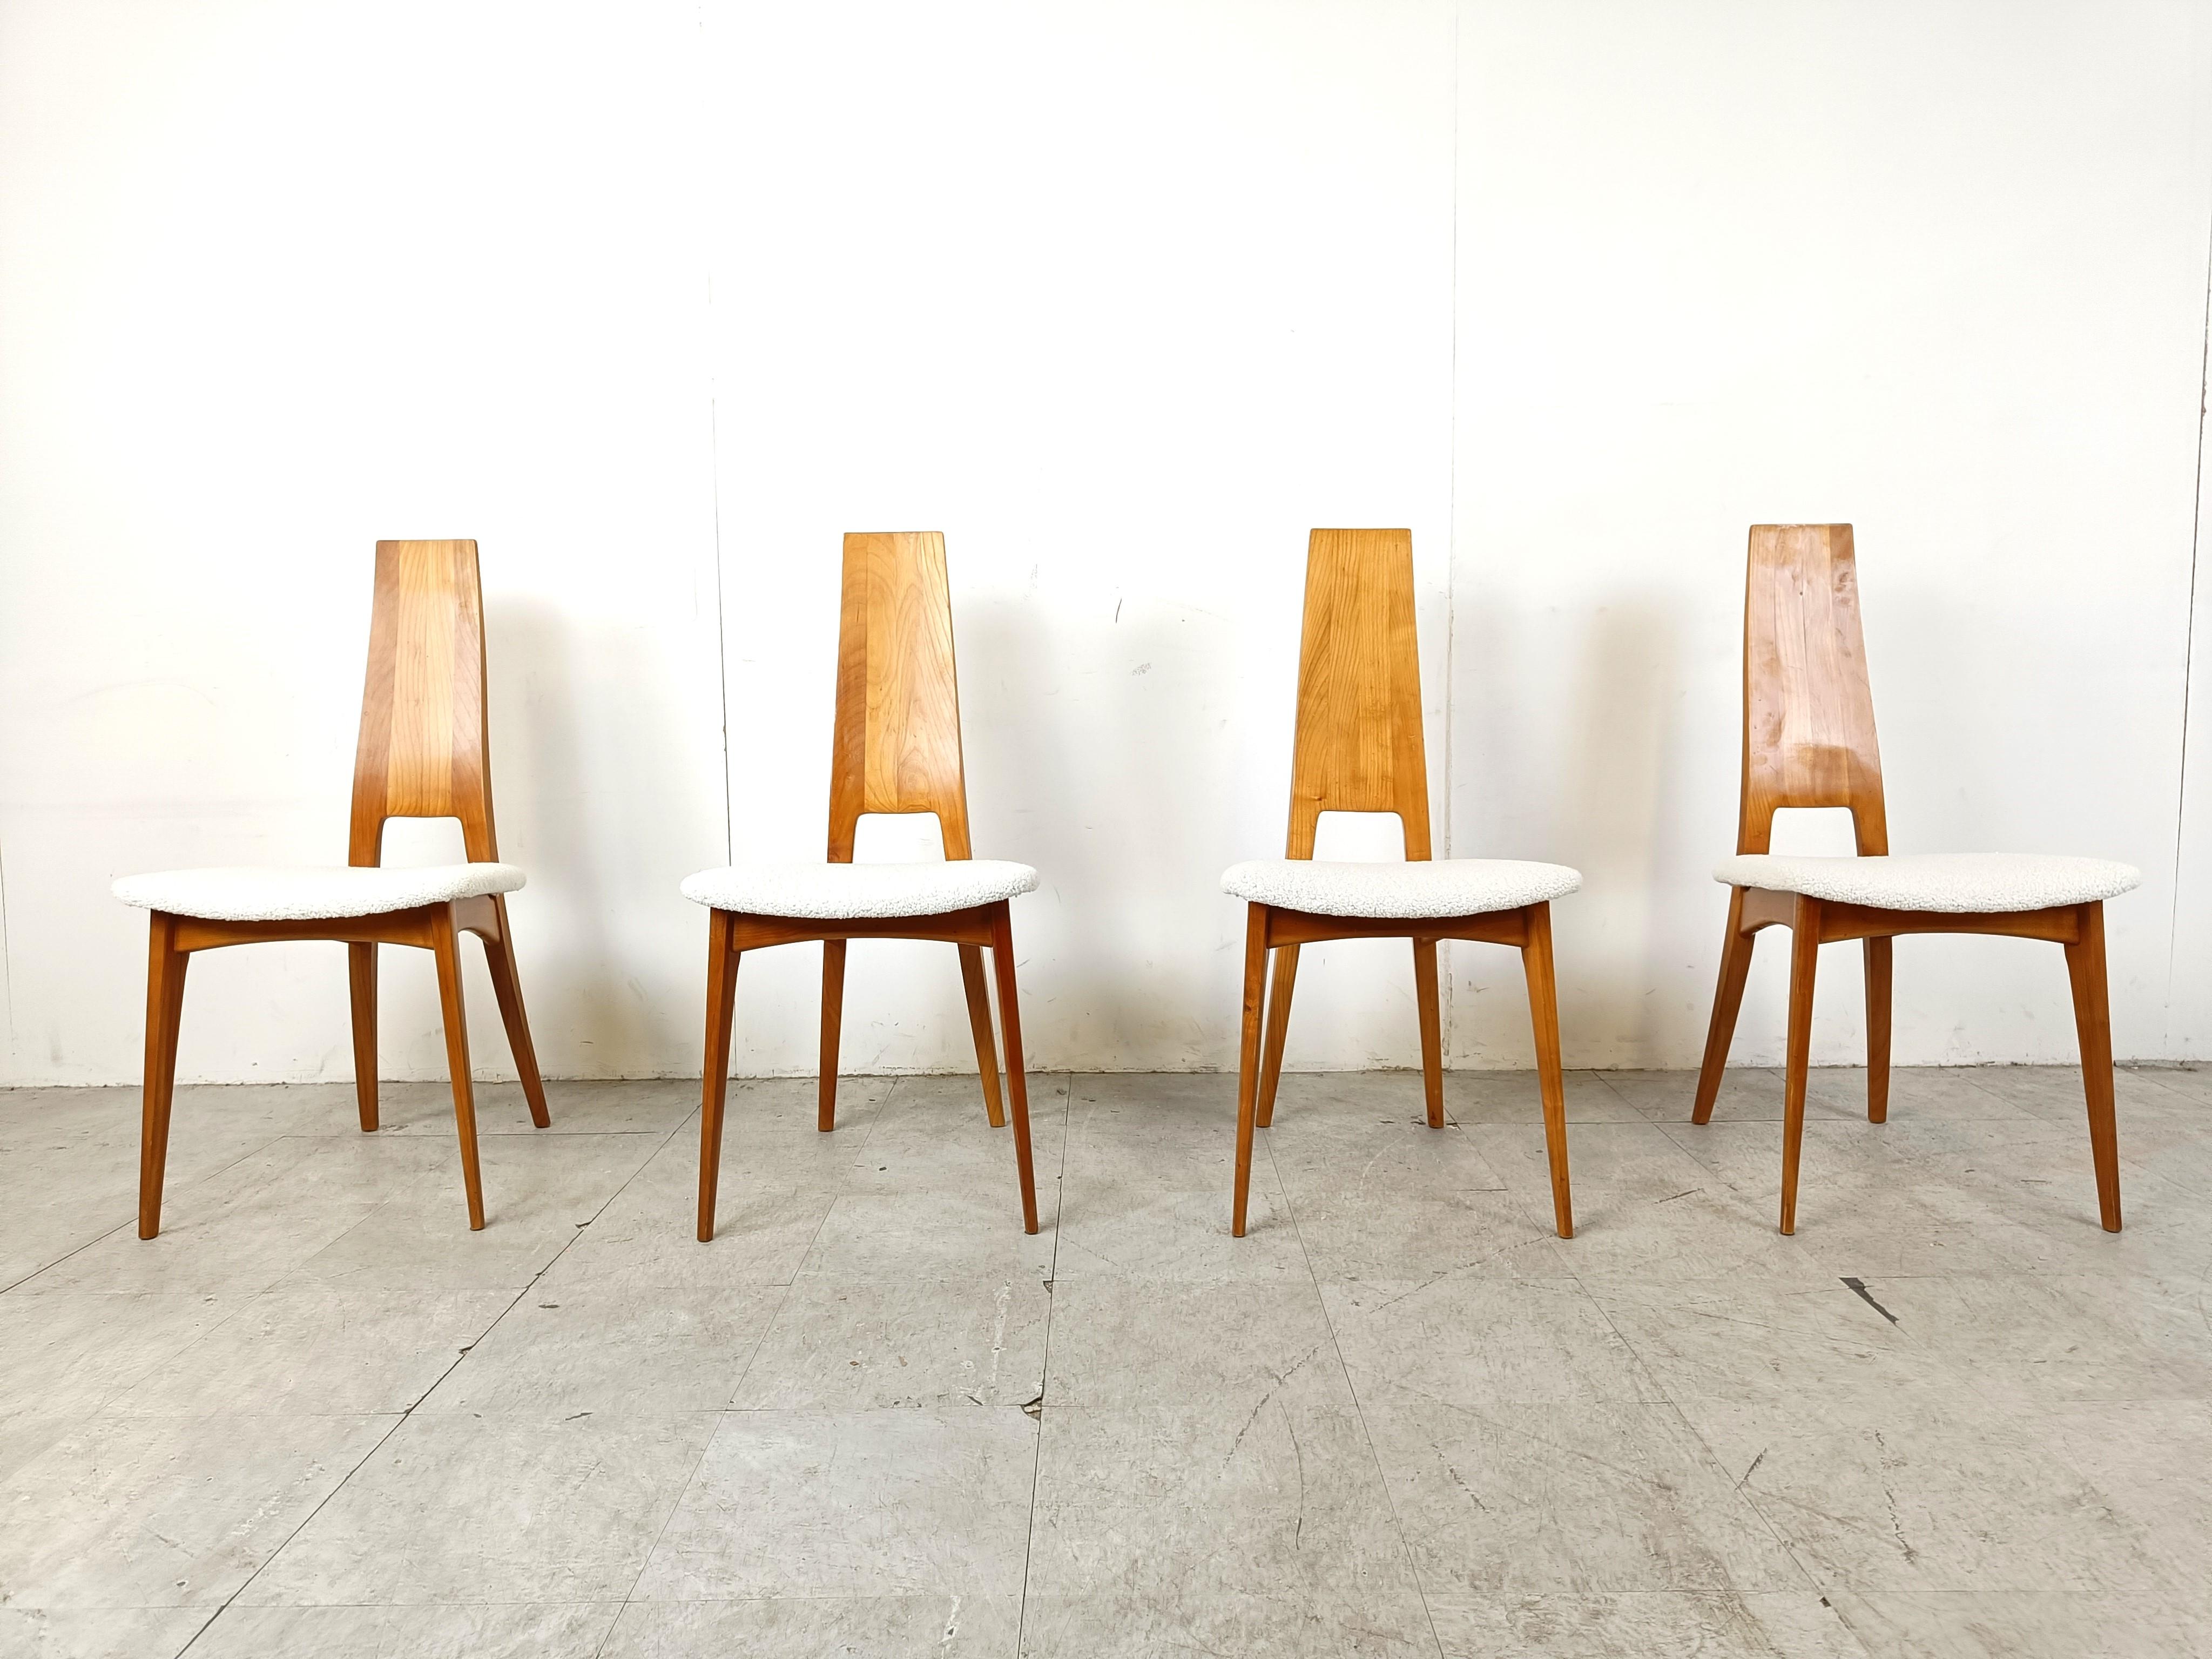 Elégantes chaises de salle à manger en bois courbé de chêne par Van DEN Pauvers, Belgique.

Les chaises sont dotées d'un dossier en bois courbé, fin, solide et très élégant, qui descend jusqu'aux pieds arrière de la chaise.

Nouvellement tapissée de